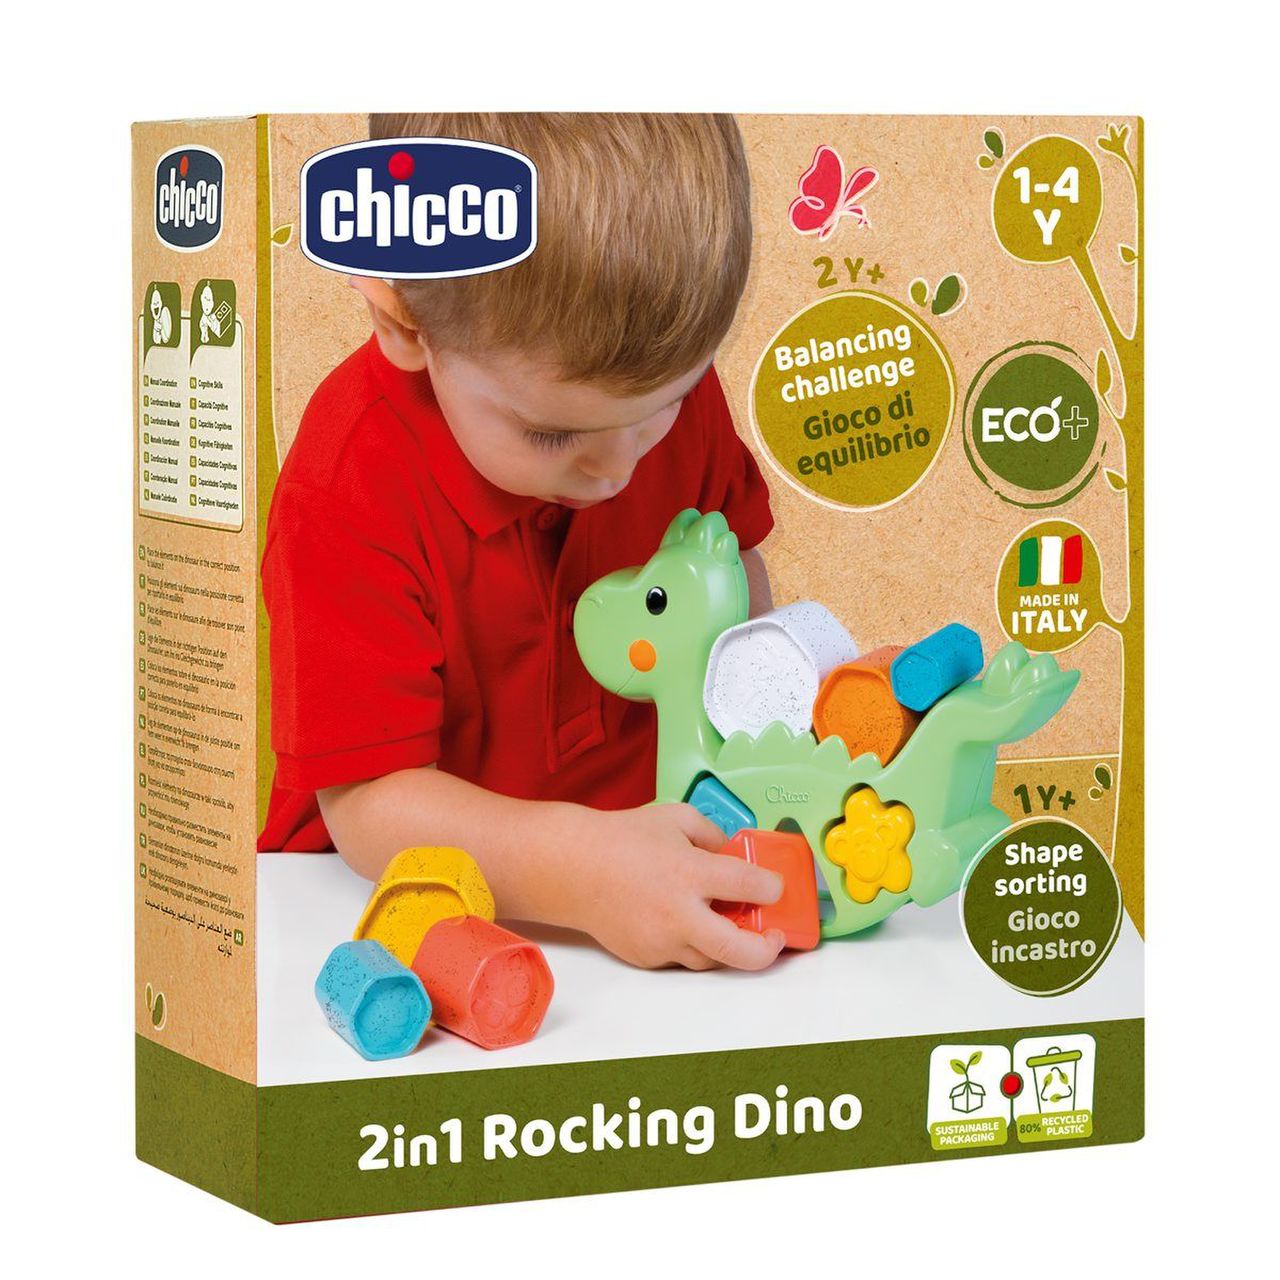 Chicco CHICCO 2in1 ROCKING DINO gioco di equilibrio 1-4 anni 